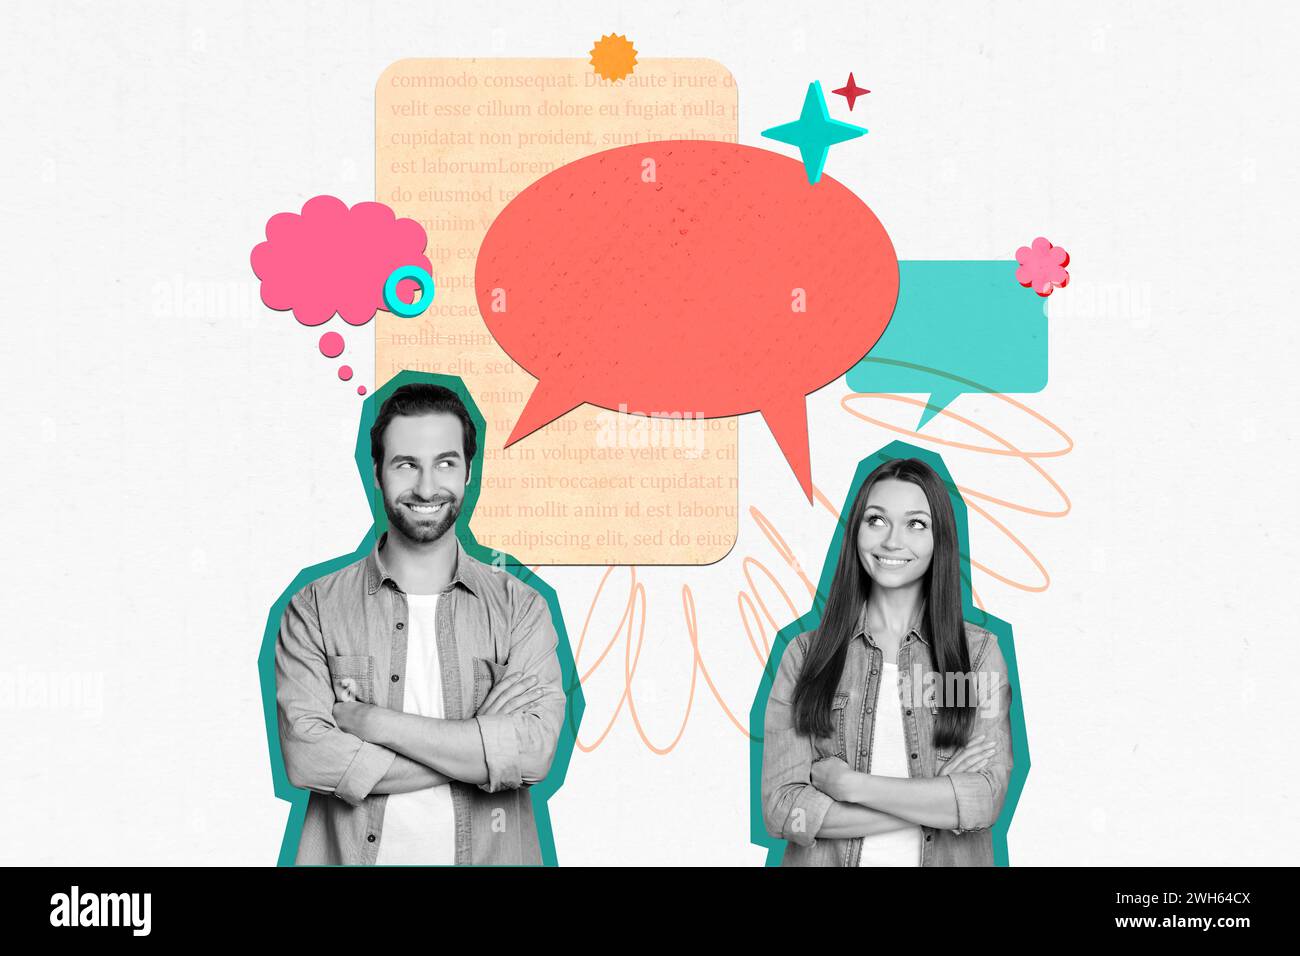 Horizontale kreative Foto-Collage von zwei Liebenden neugierig sprechen sprechen sprechen Gespräch Gespräch betrachten Textblase auf Zeichenhintergrund Stockfoto